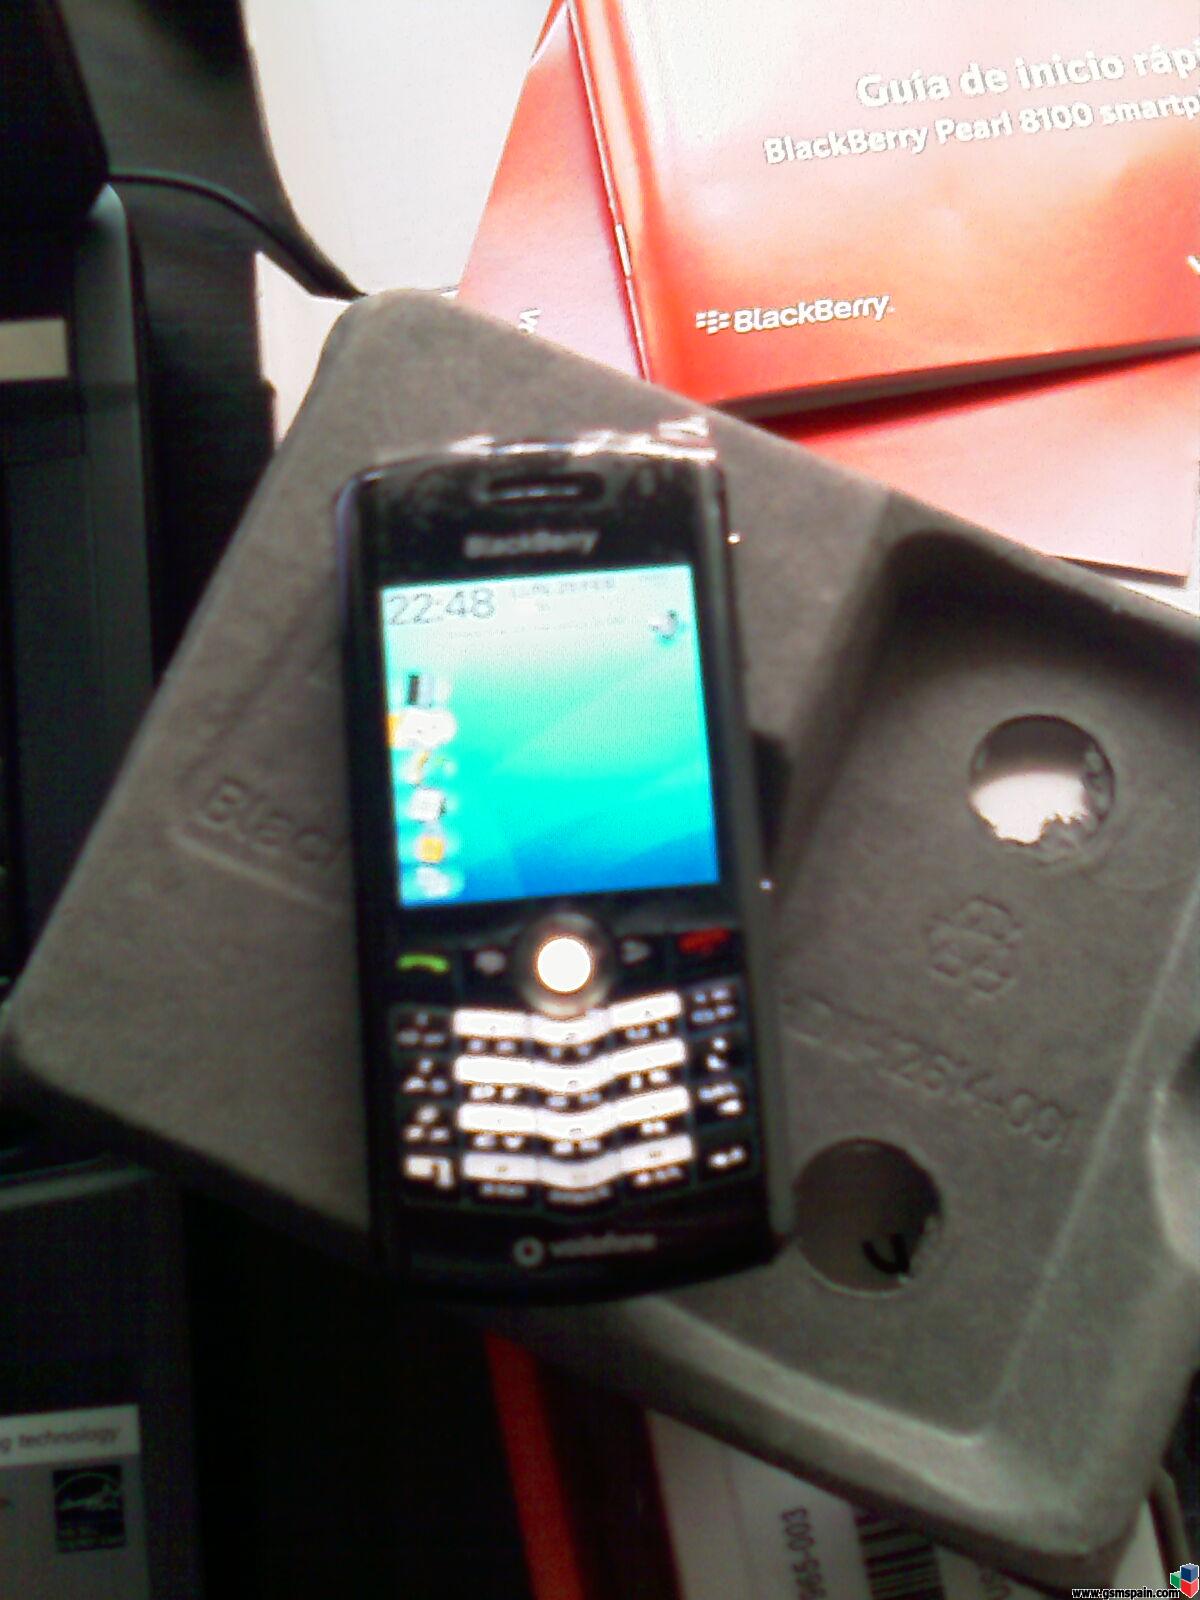 Vendo Blackberry Pearl de Vodafone Negra